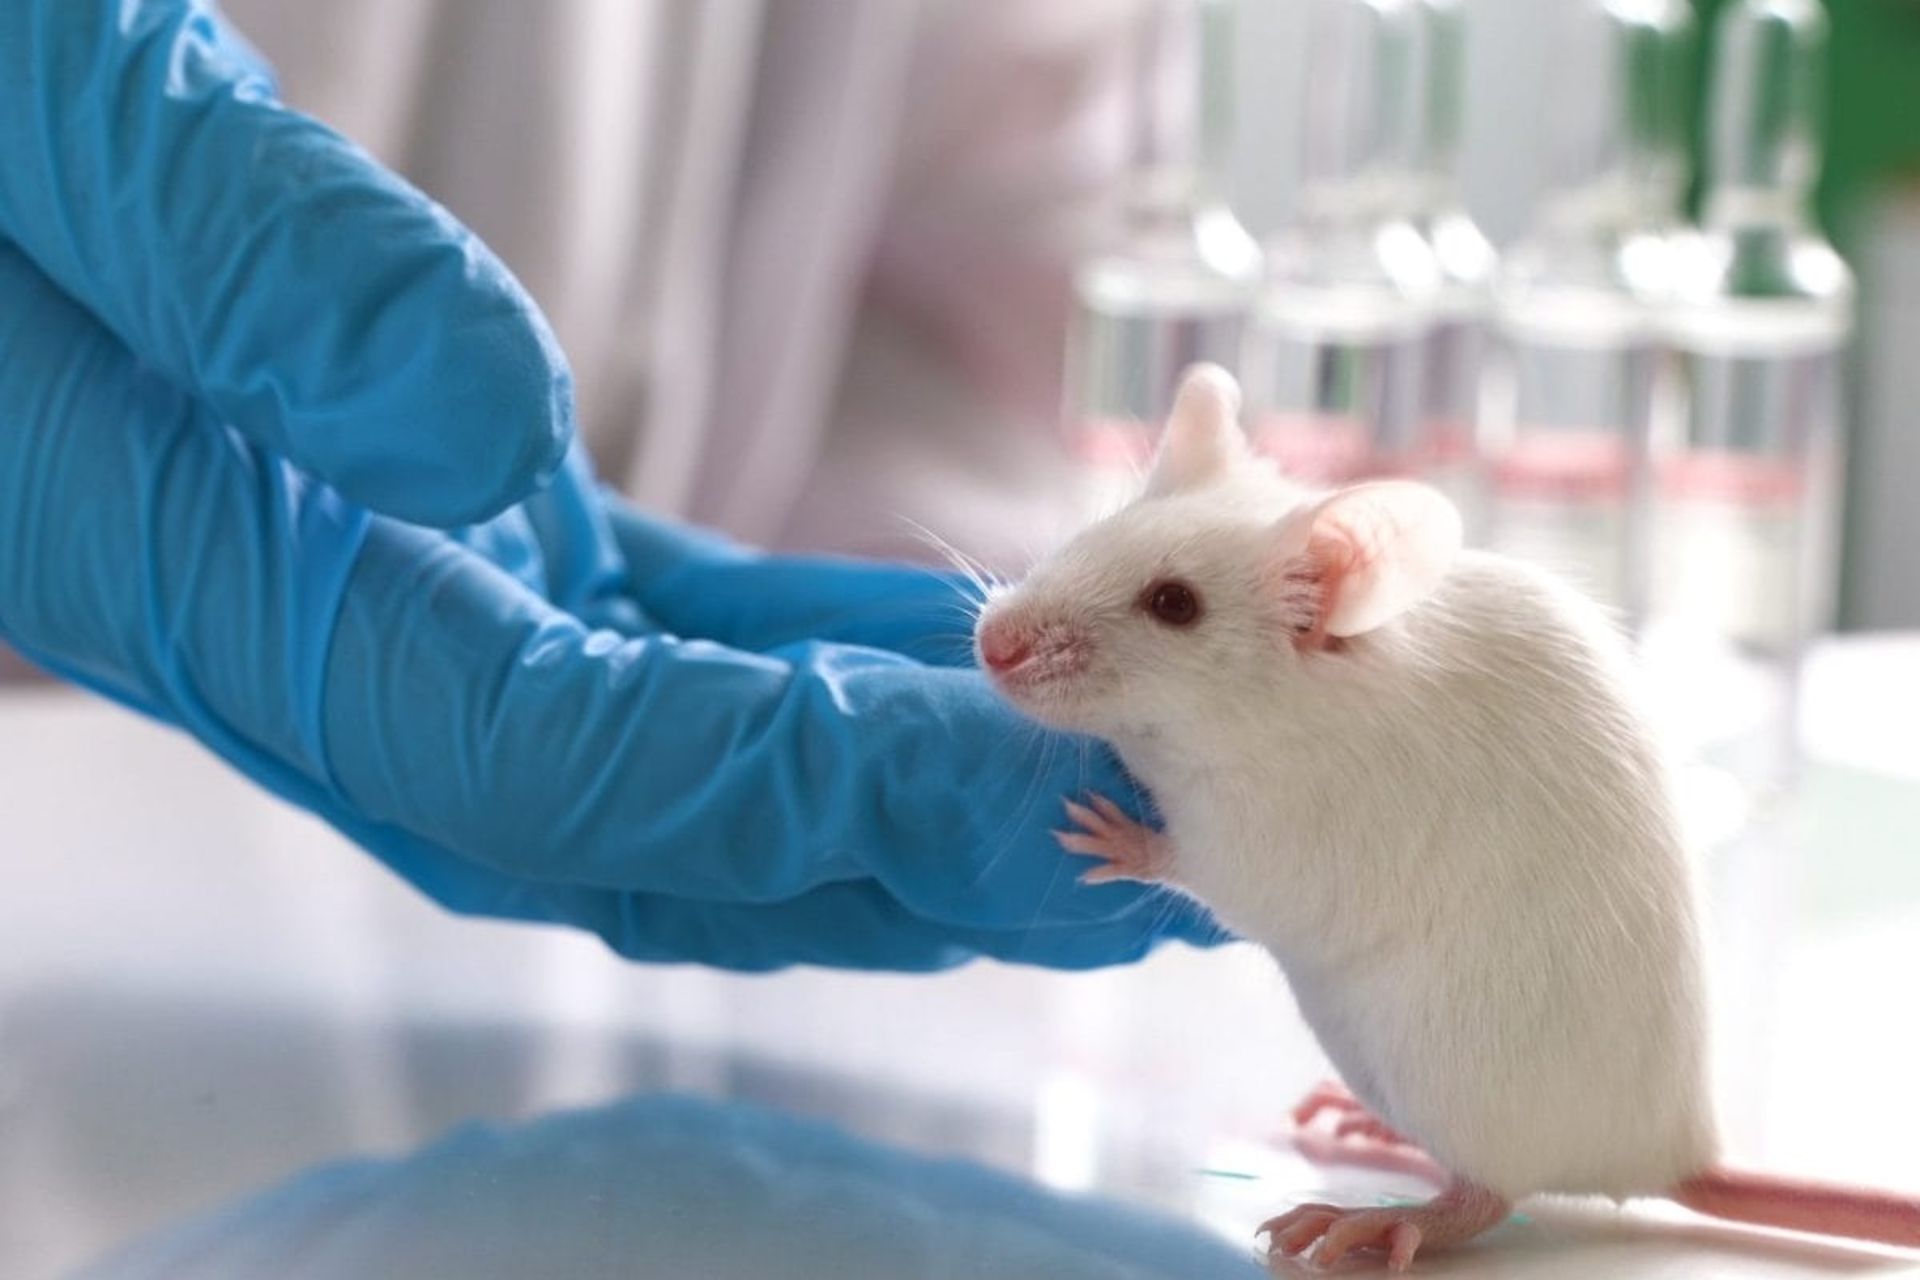 موش آزمایشگاهی سفیدرنگ انگشتان دست محقق را گرفته است